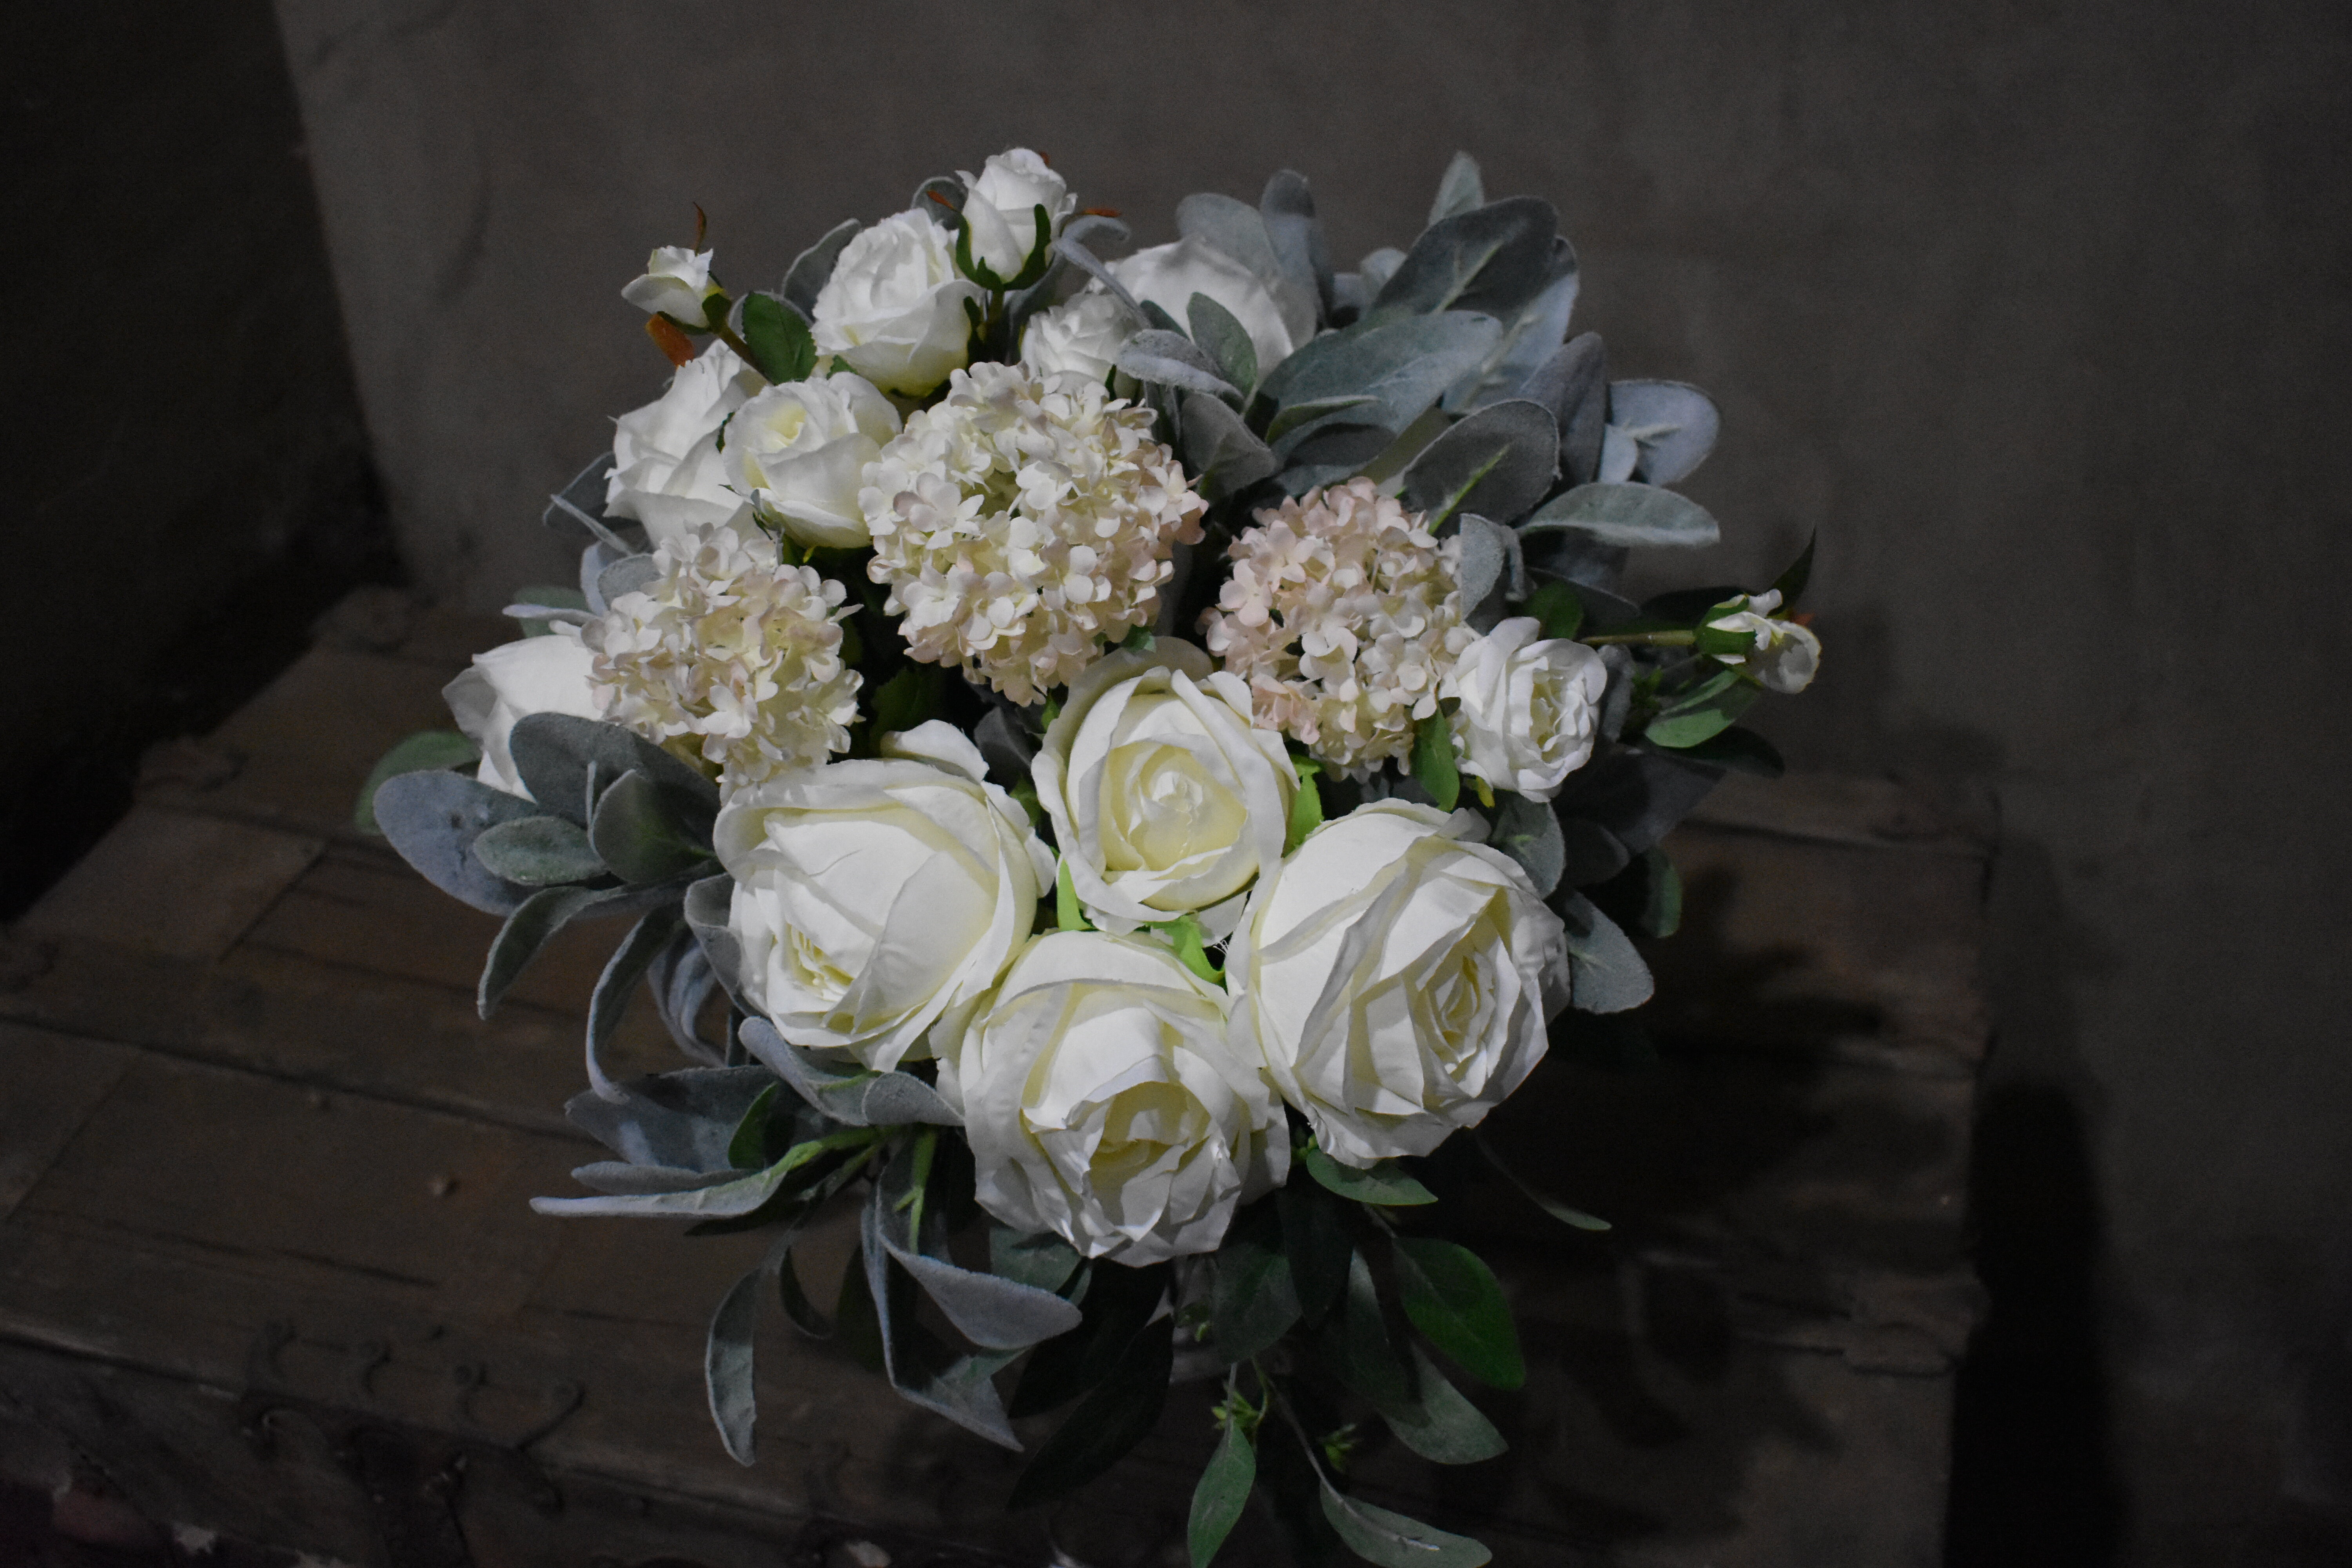 bridal floral centerpieces